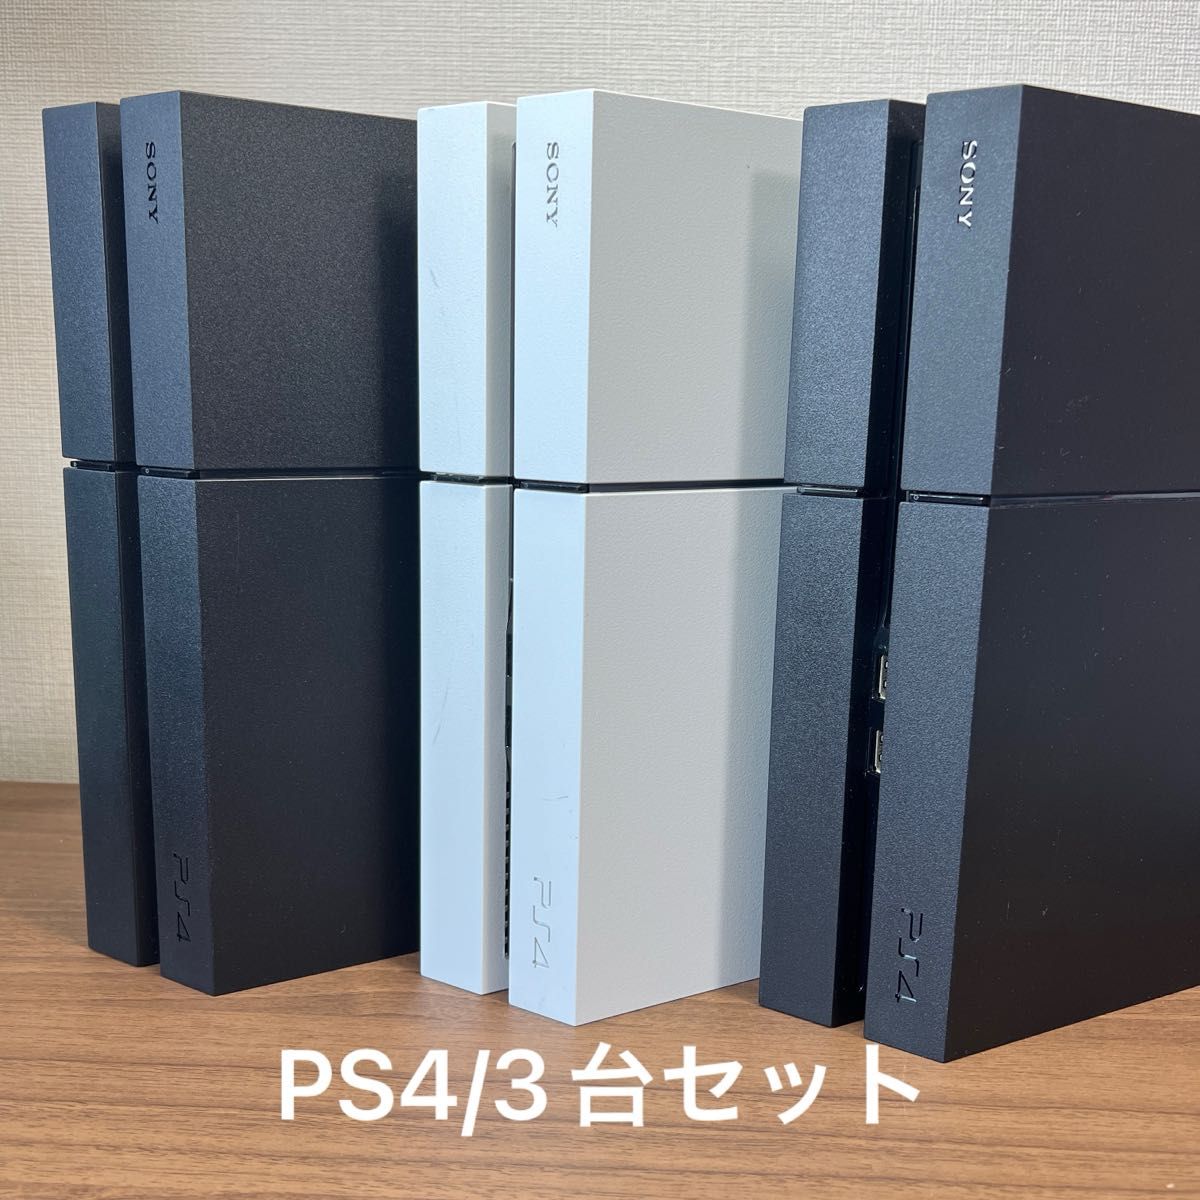 ★3台セット★ PlayStation4 CUH-1200A 500GB 